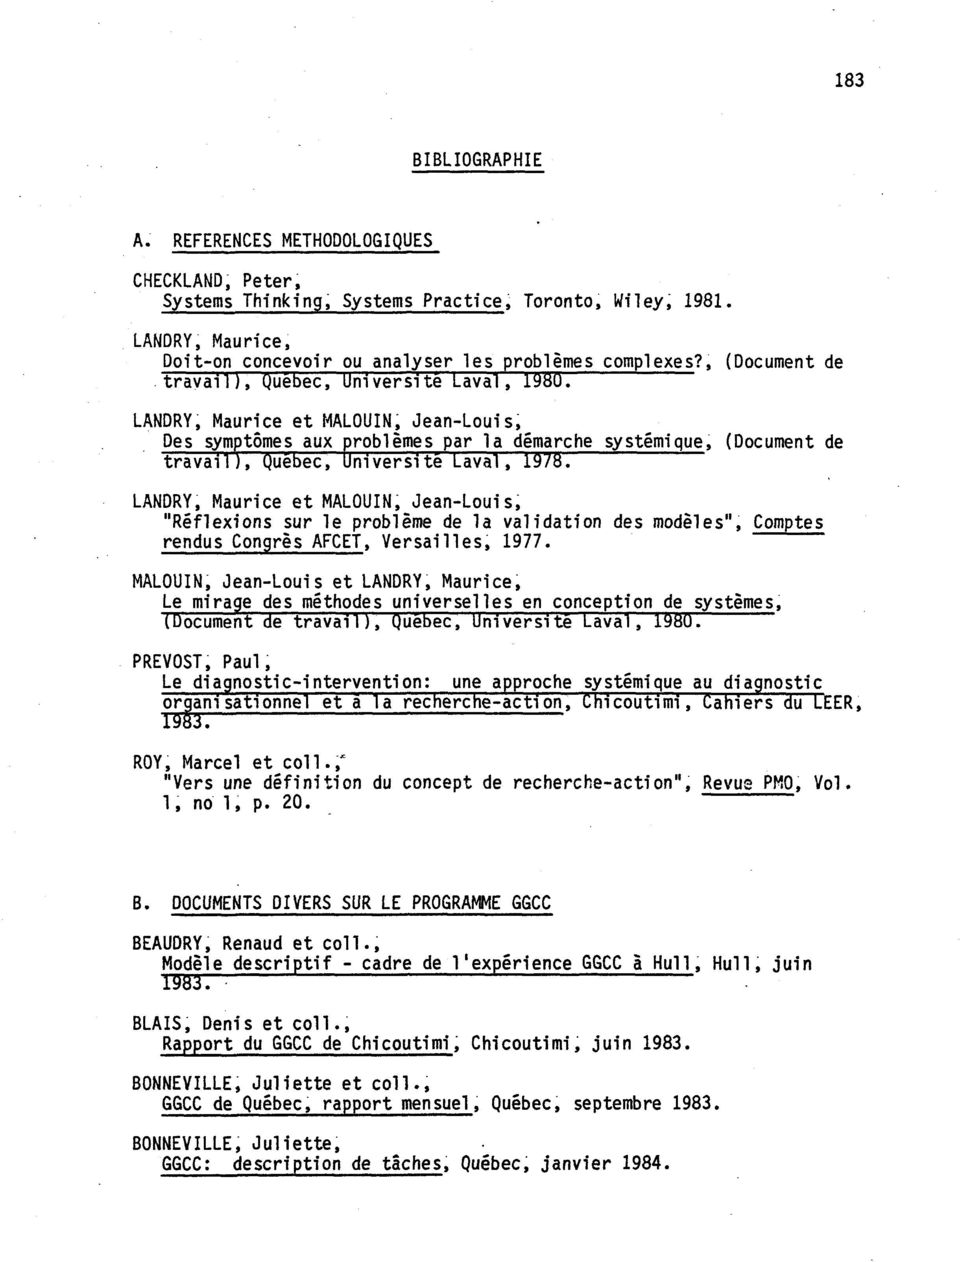 LANDRY, Maurice et MALOUIN, Jean-Louis, Des symptômes aux problèmes par la démarche systémique, (Document de travail), Québec, Université Laval, 1978.